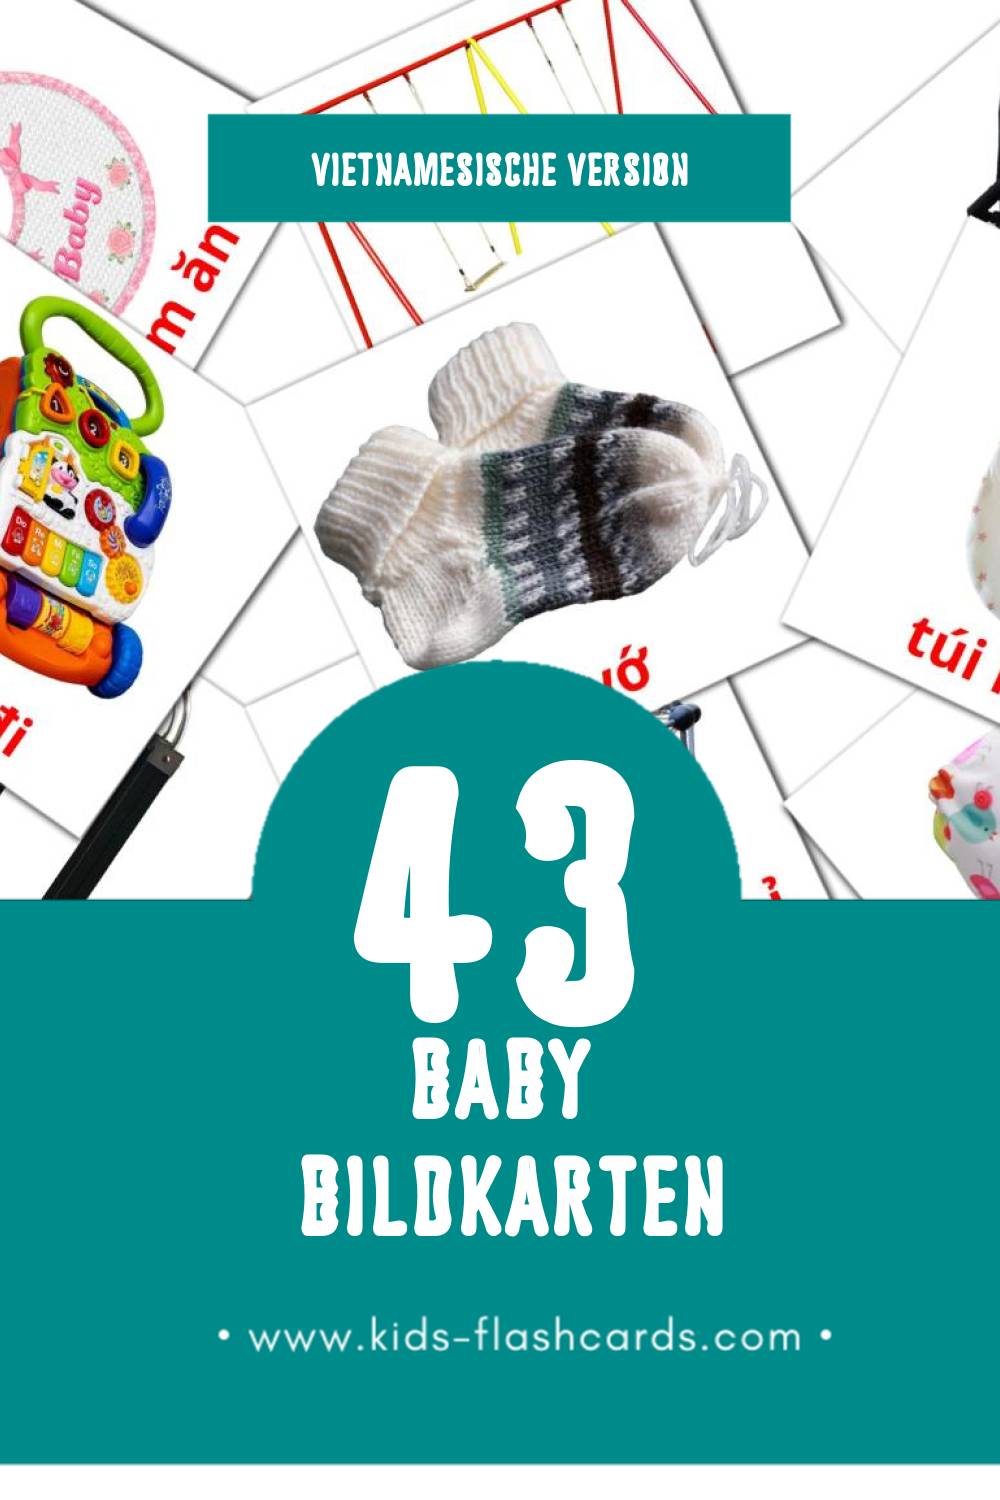 Visual Baybay Flashcards für Kleinkinder (45 Karten in Vietnamesisch)